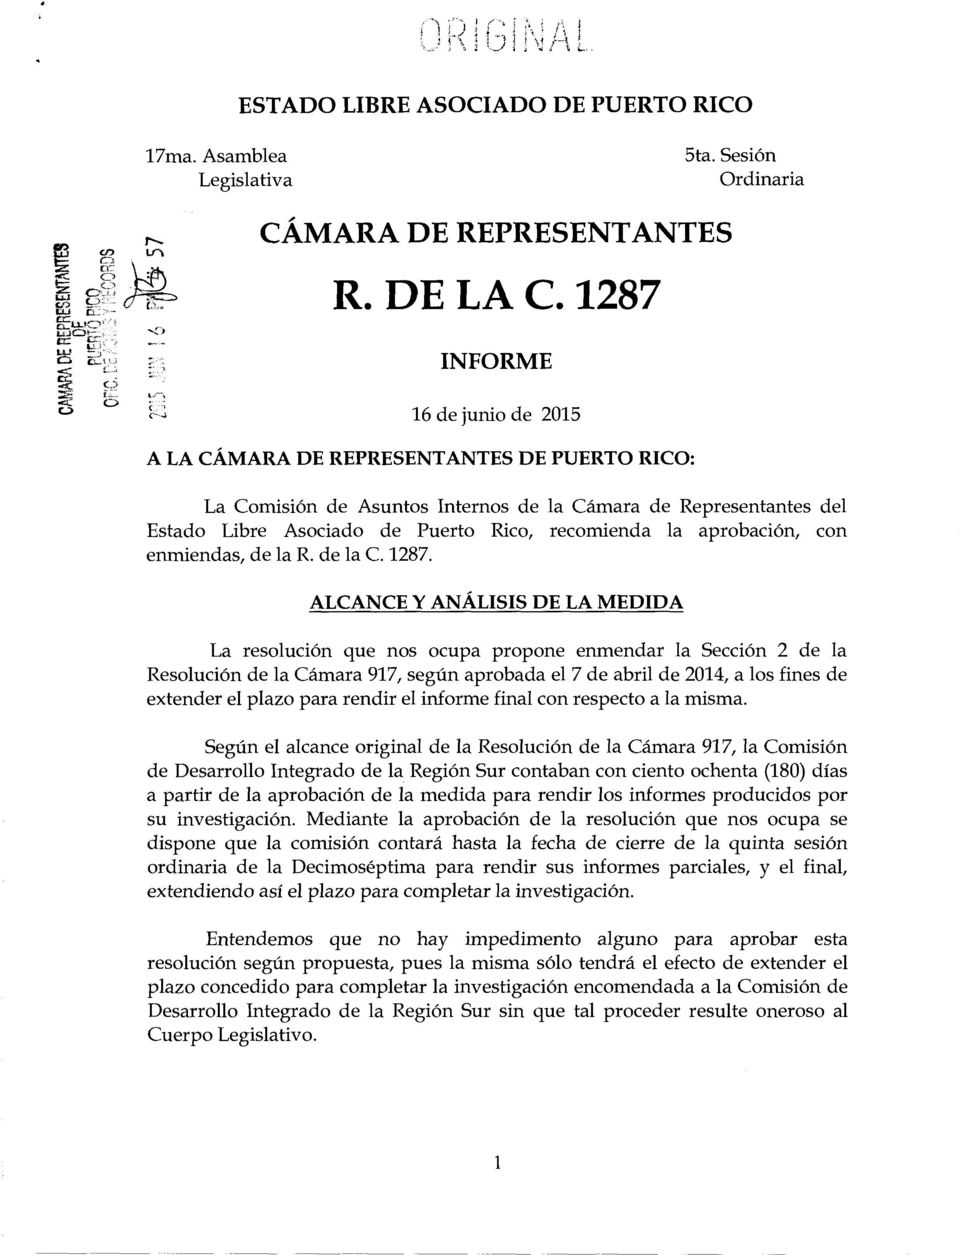 aprobacion, con enmiendas, de la R. de la C. 1287.